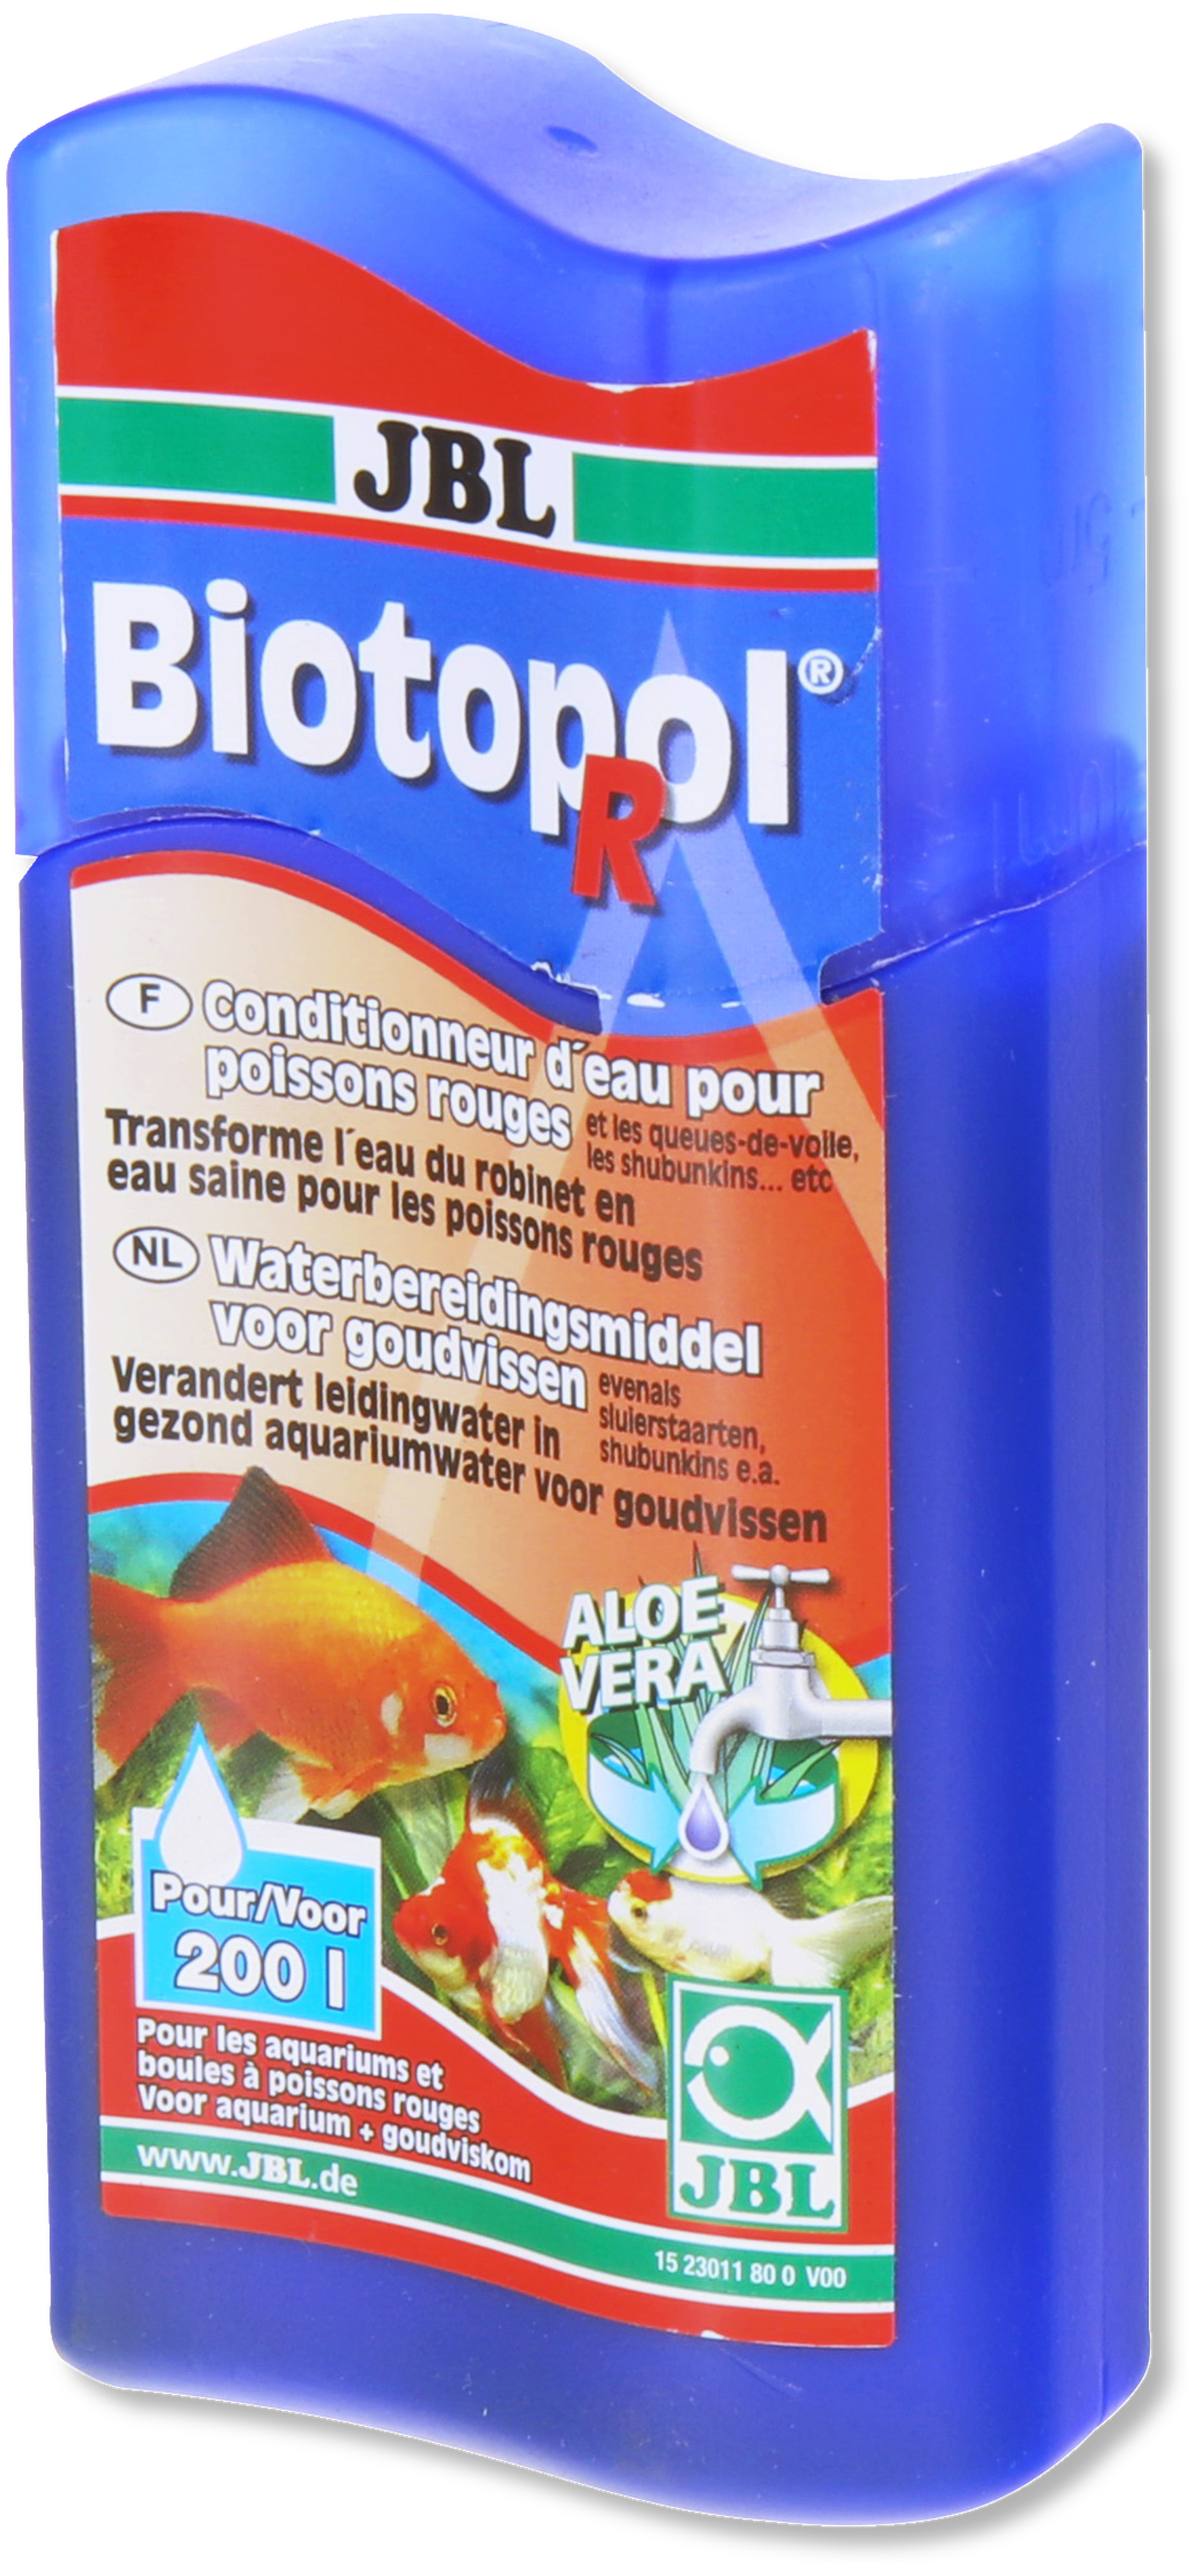 JBL Biotopol 250ml conditionneur d'eau métaux lourds - Materiel